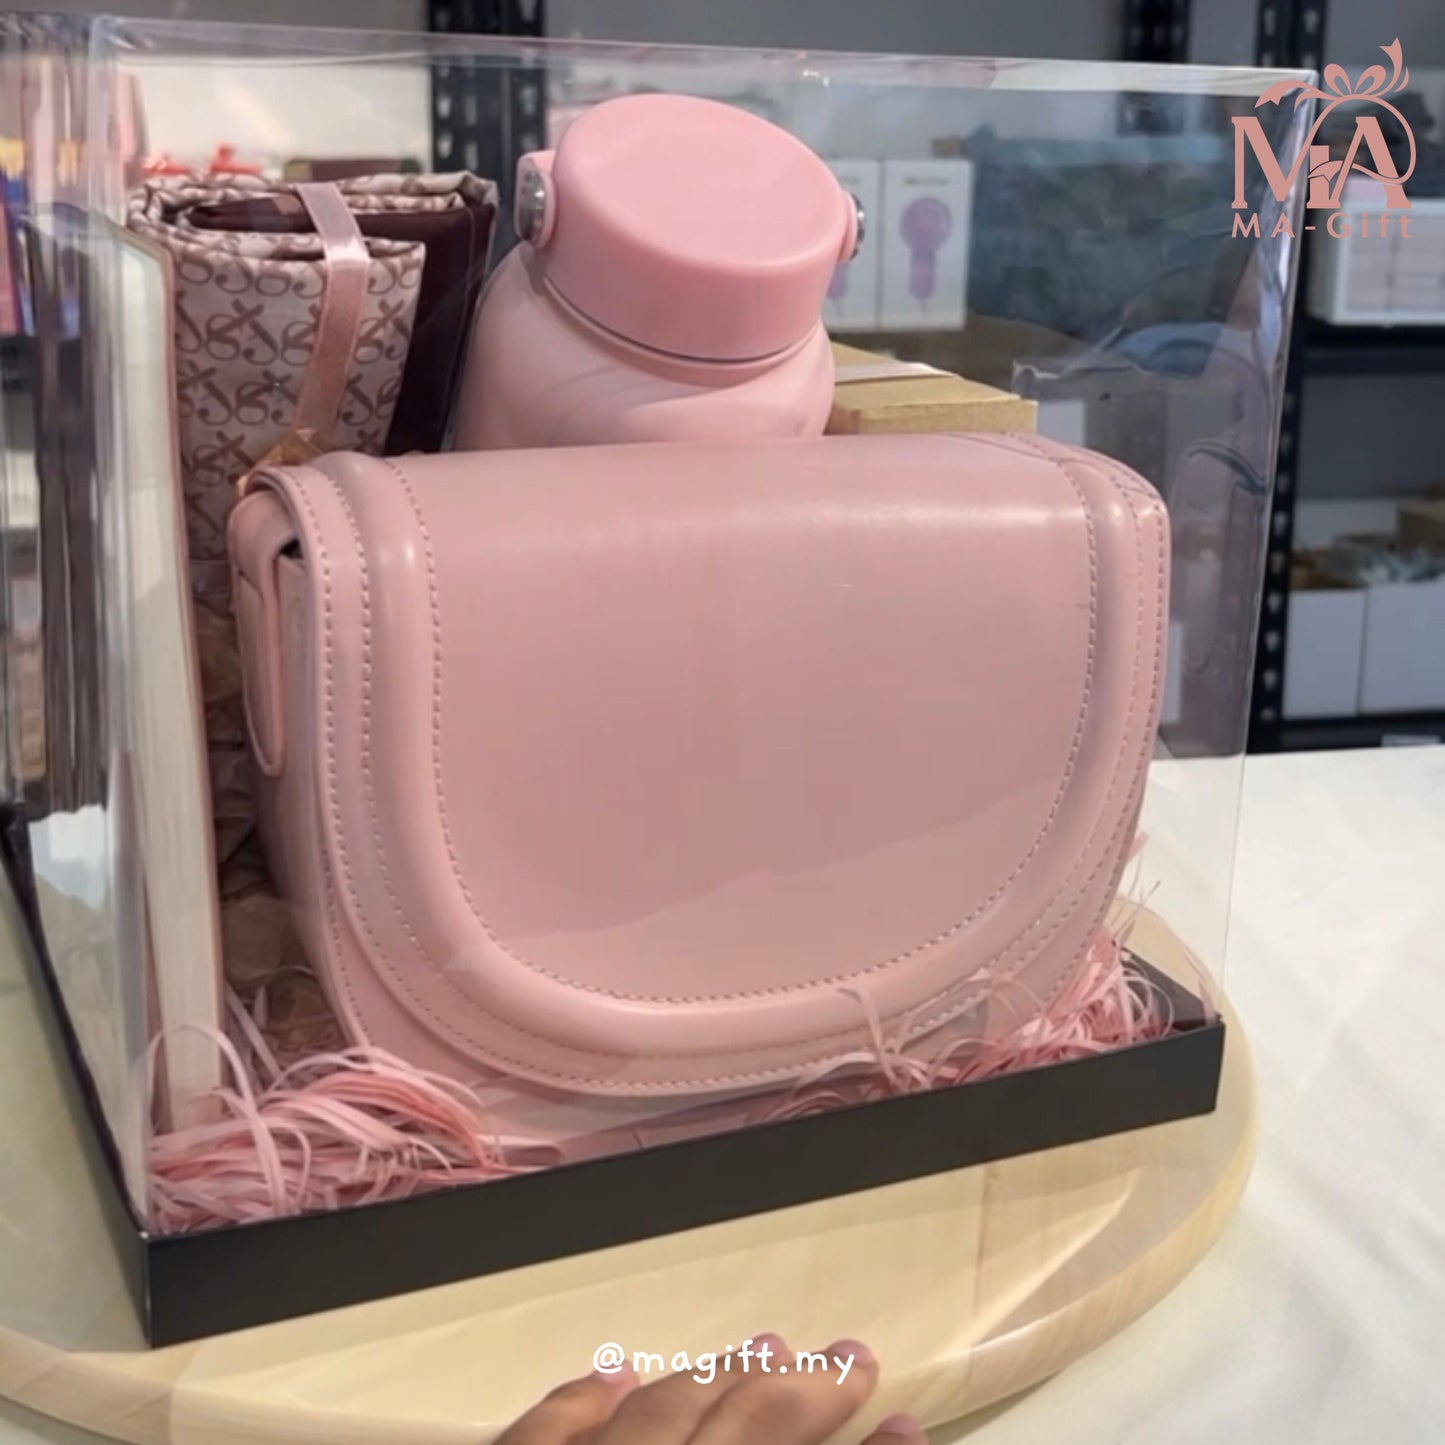 [Clear Box] Appreciate You in Soft Pink Gift